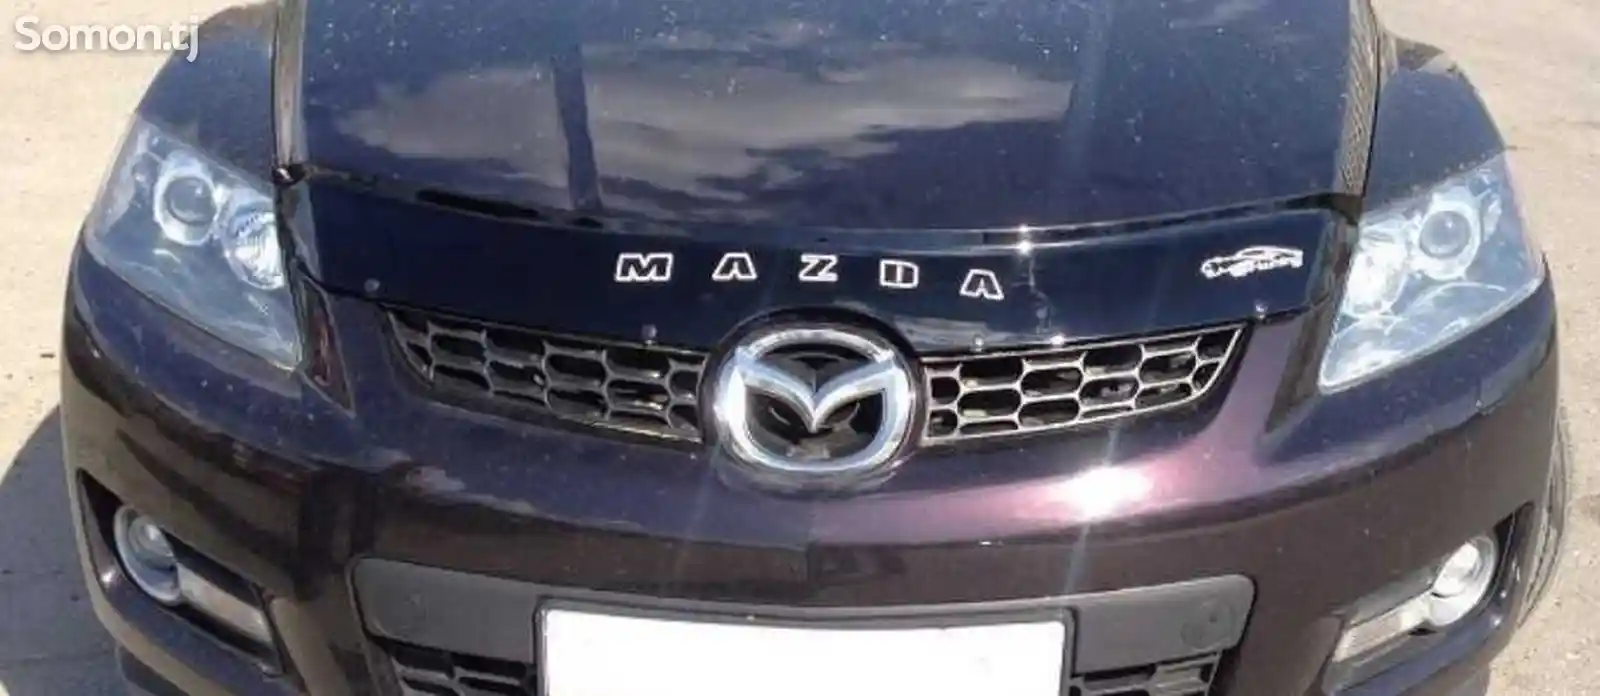 Спойлер на Mazda CX7-2